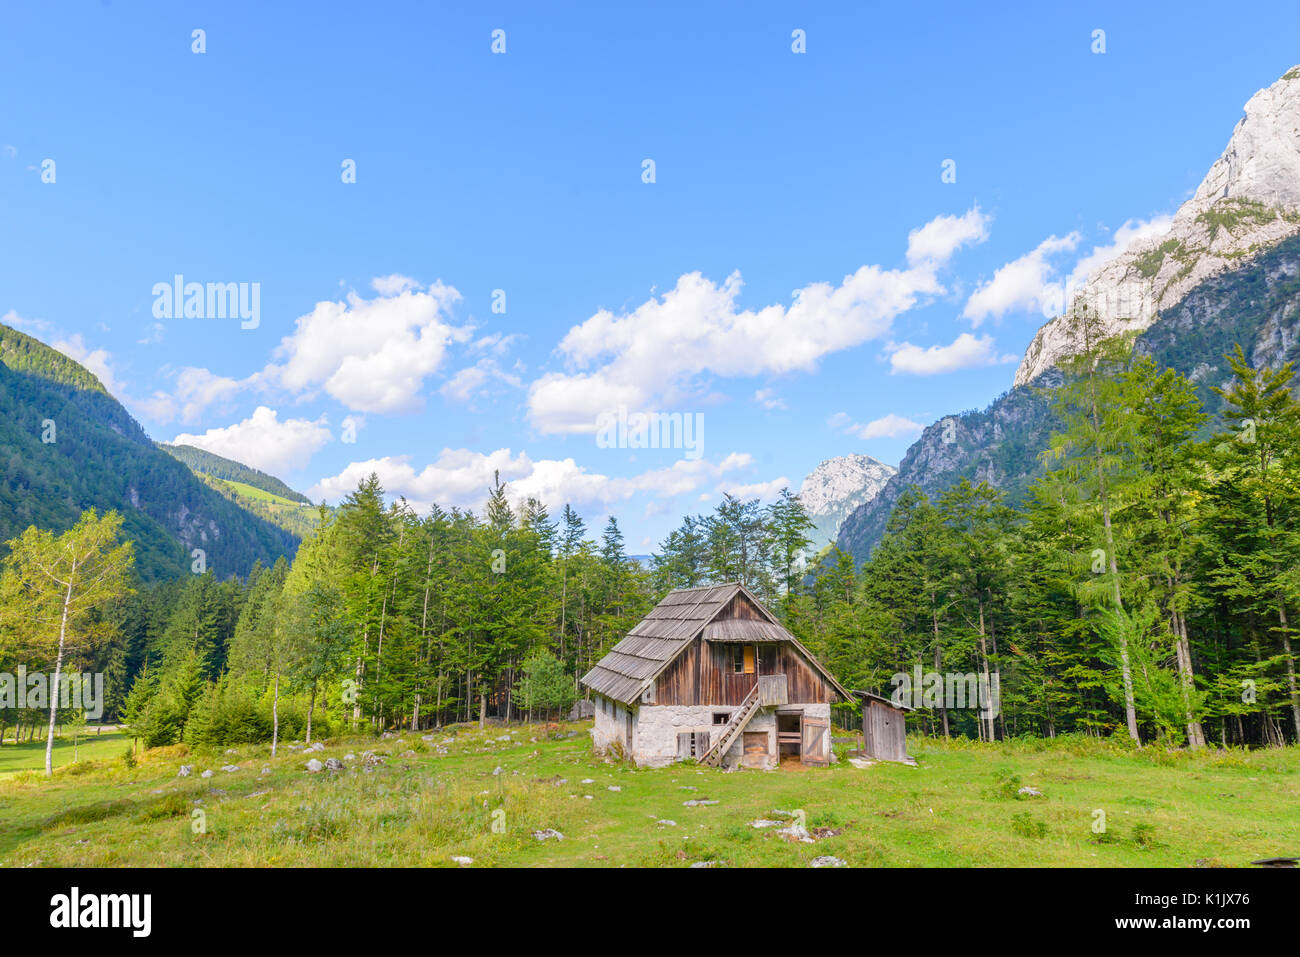 Chalet de montagne, cabane dans les Alpes, situé dans la région de robanov kot, la Slovénie, la randonnée et escalade lieu populaire avec picturescue view Banque D'Images